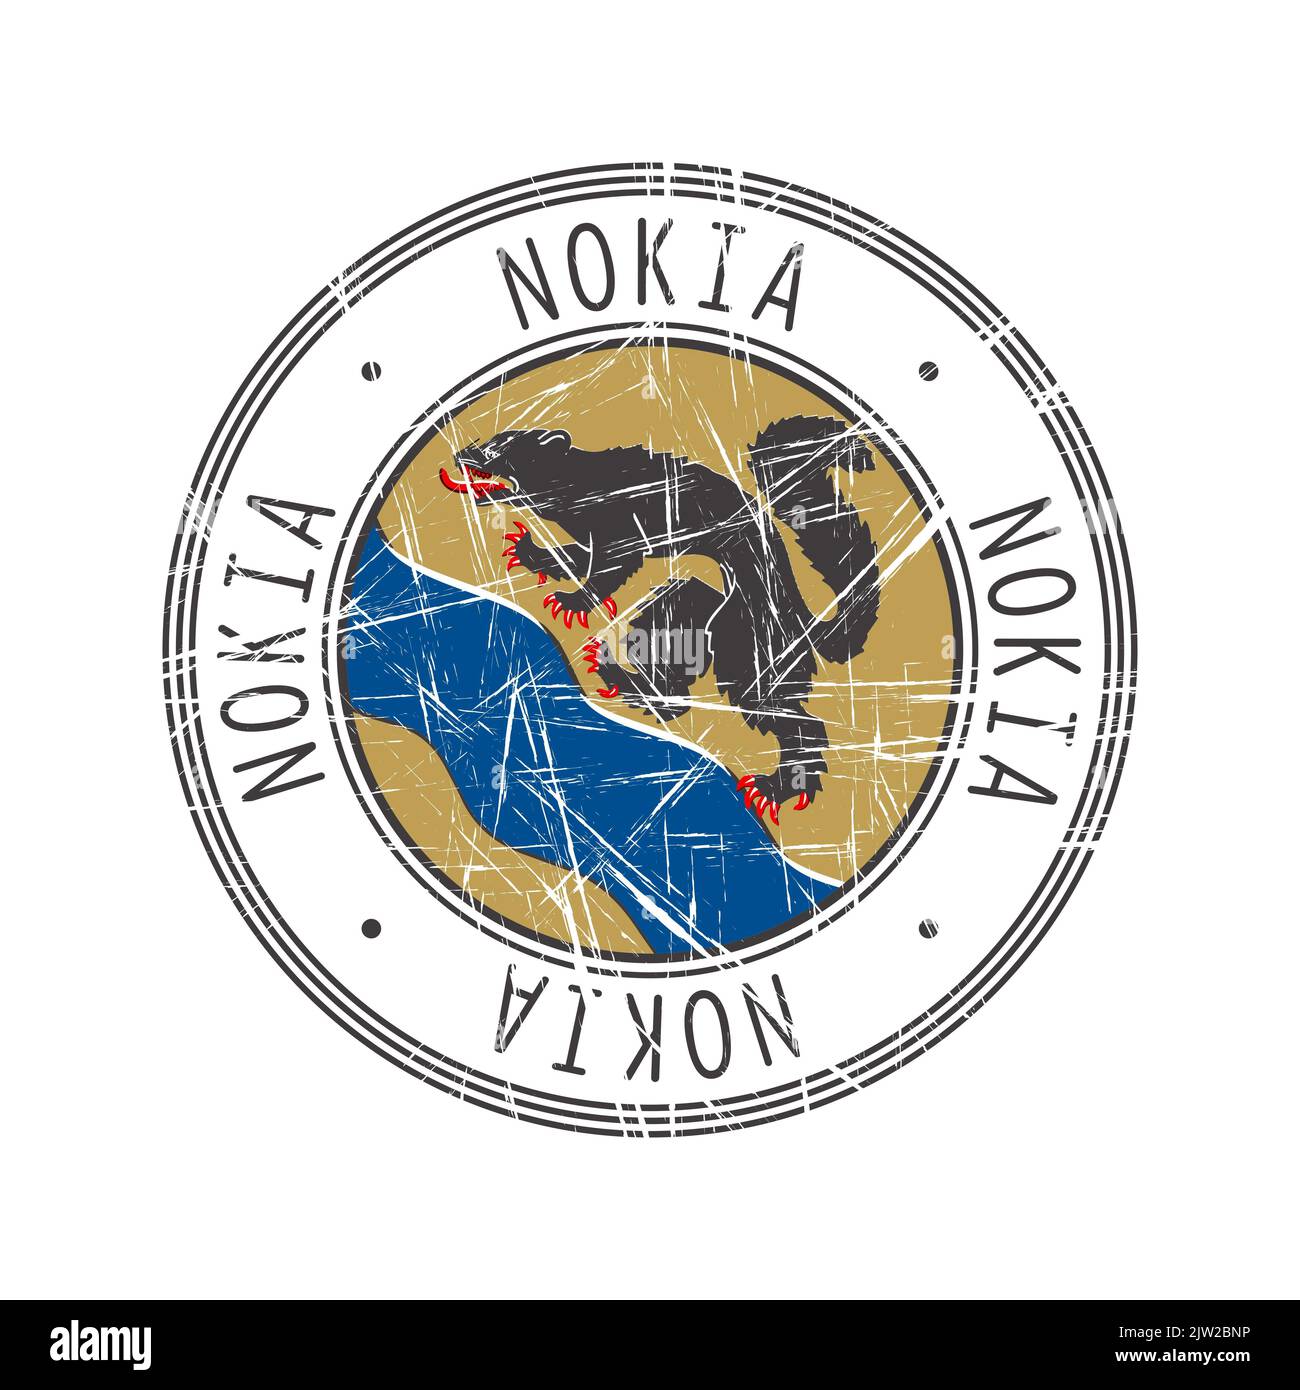 Nokia città, Finlandia. Grunge francobollo di gomma postale su sfondo bianco Foto Stock